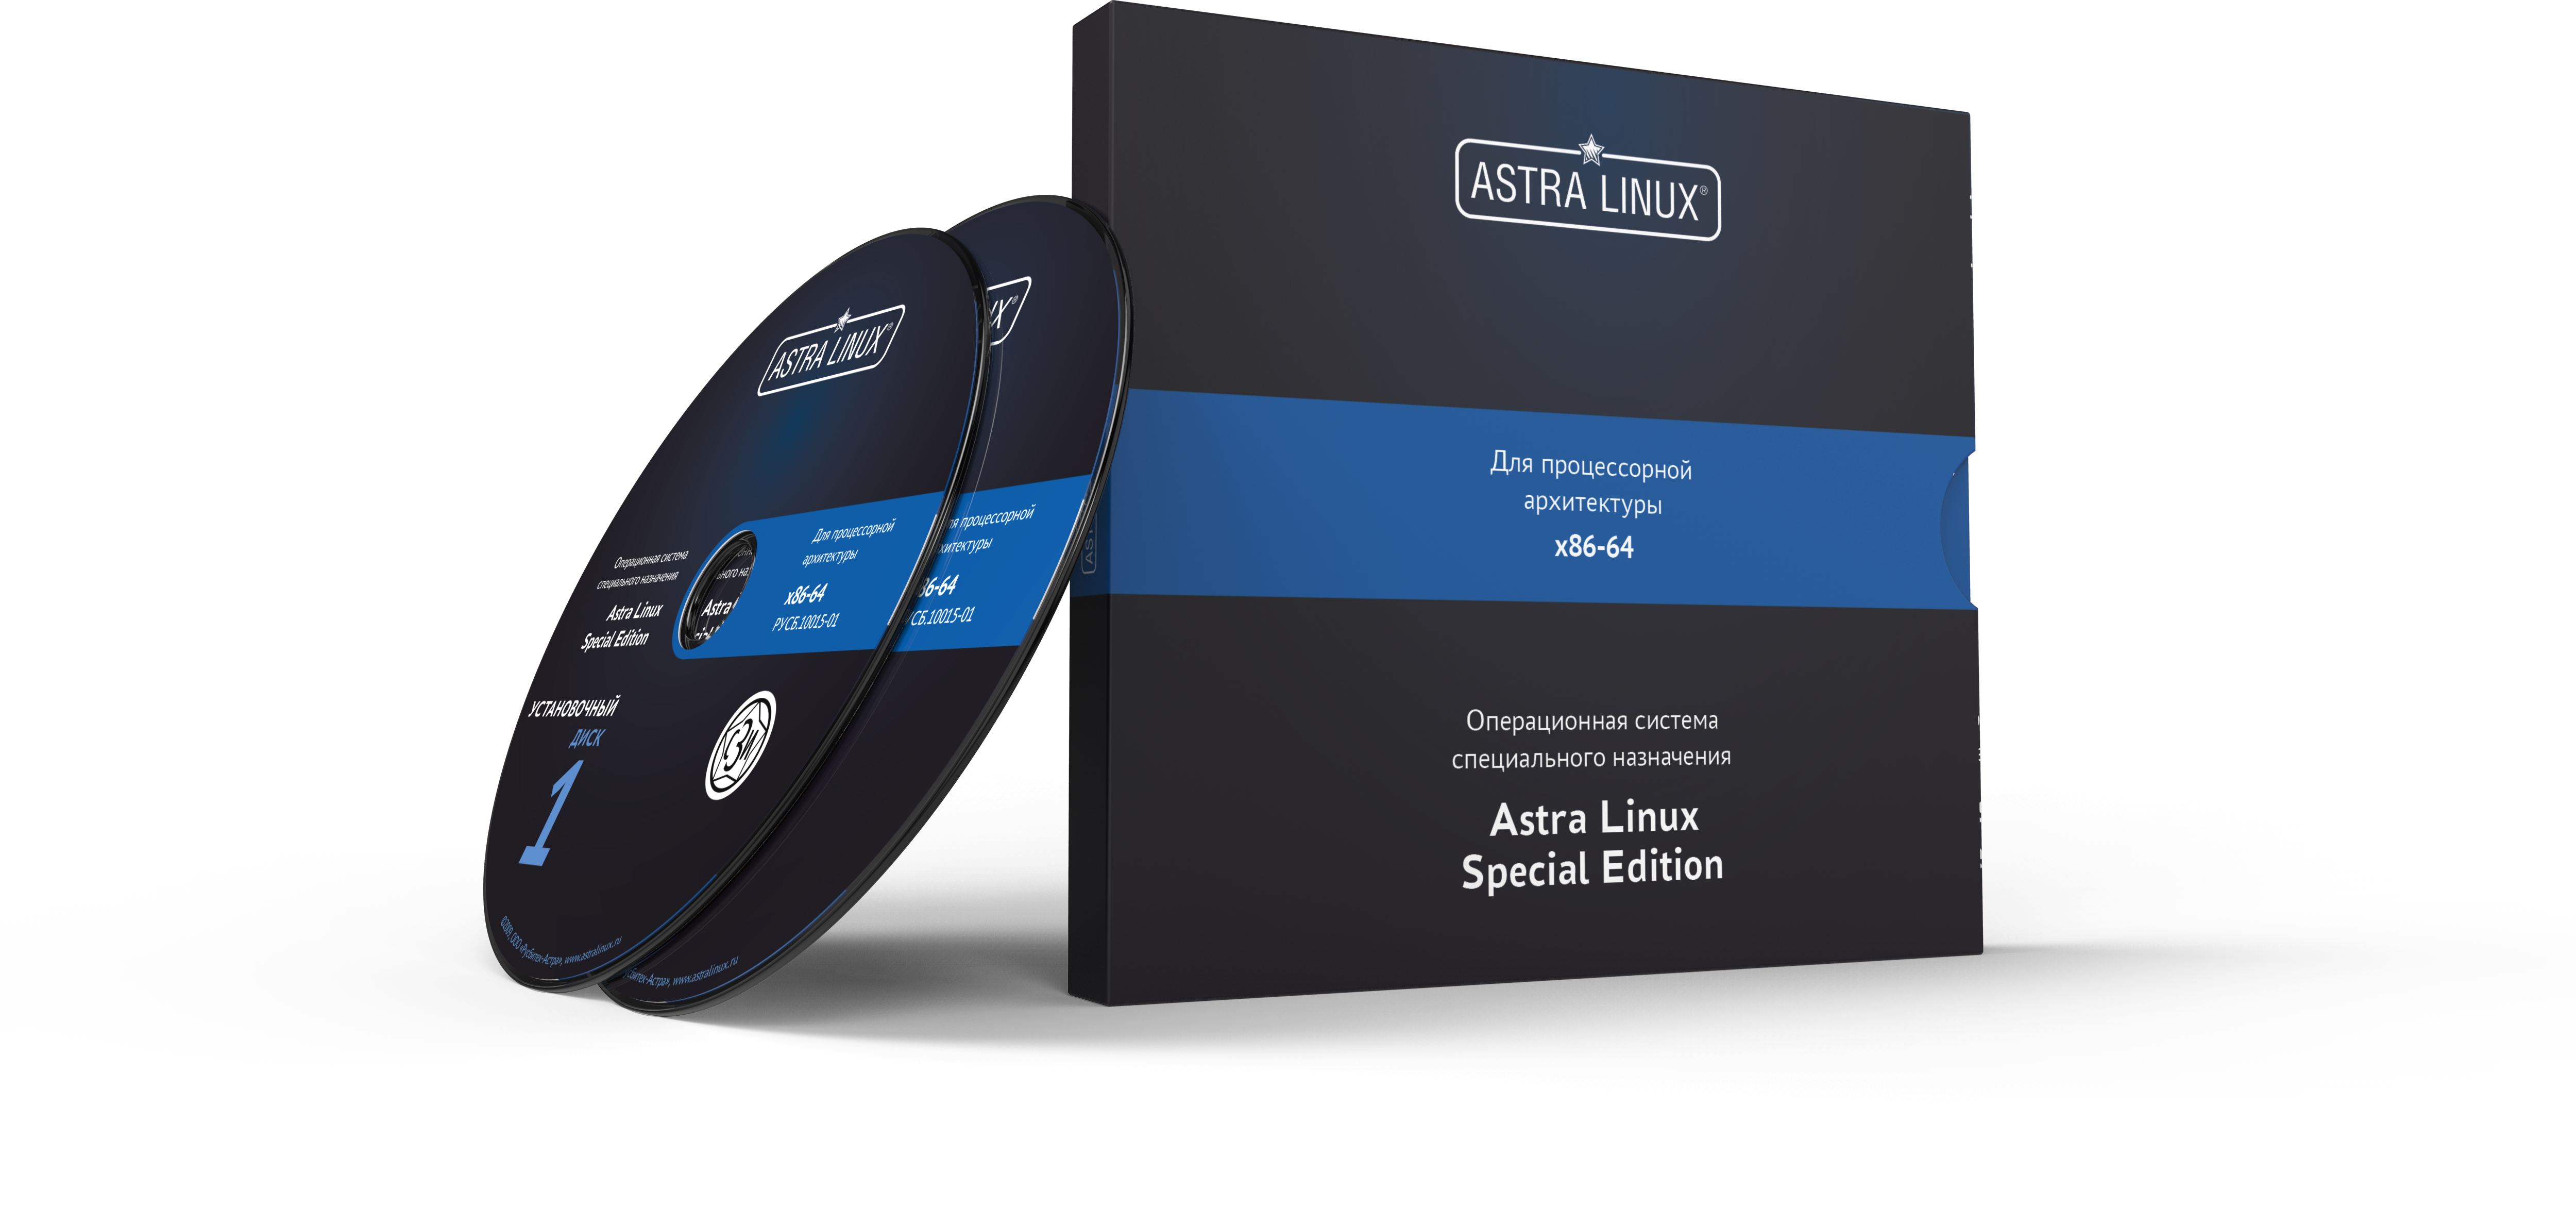 Astra Linux Special Edition 1.7 - Воронеж, для рабочей станции, электронный, "Усиленный", на 36 мес., ТП "Стандарт" на 36 мес.